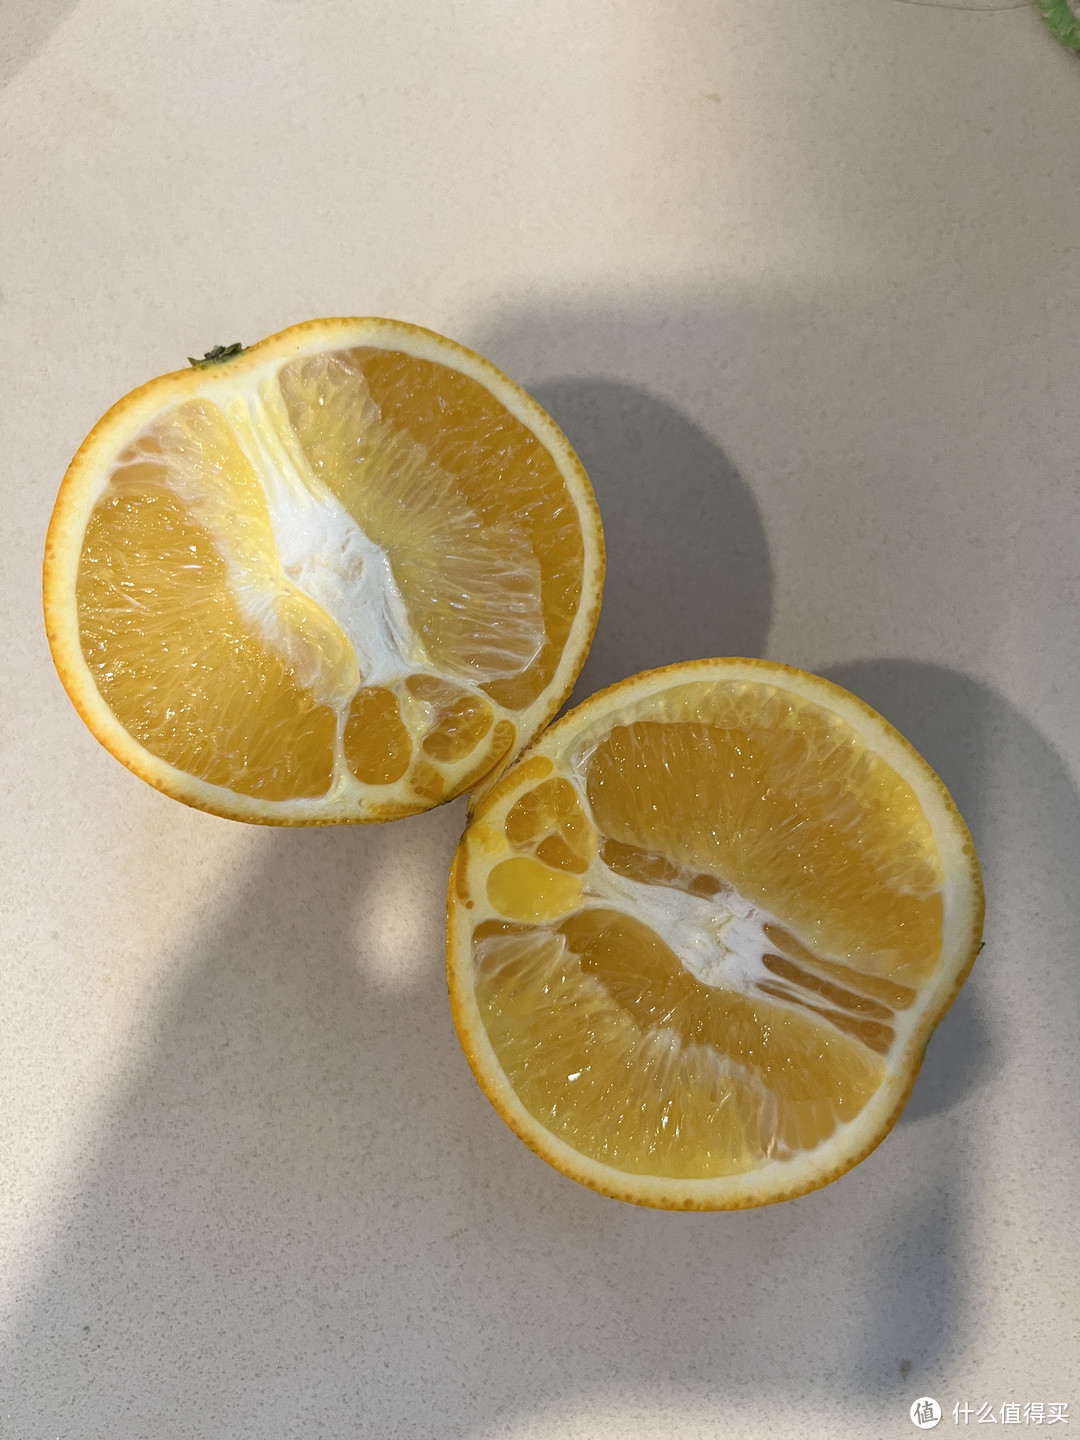 今天跟橙子杠上了——芭芭农场的的云南冰糖橙